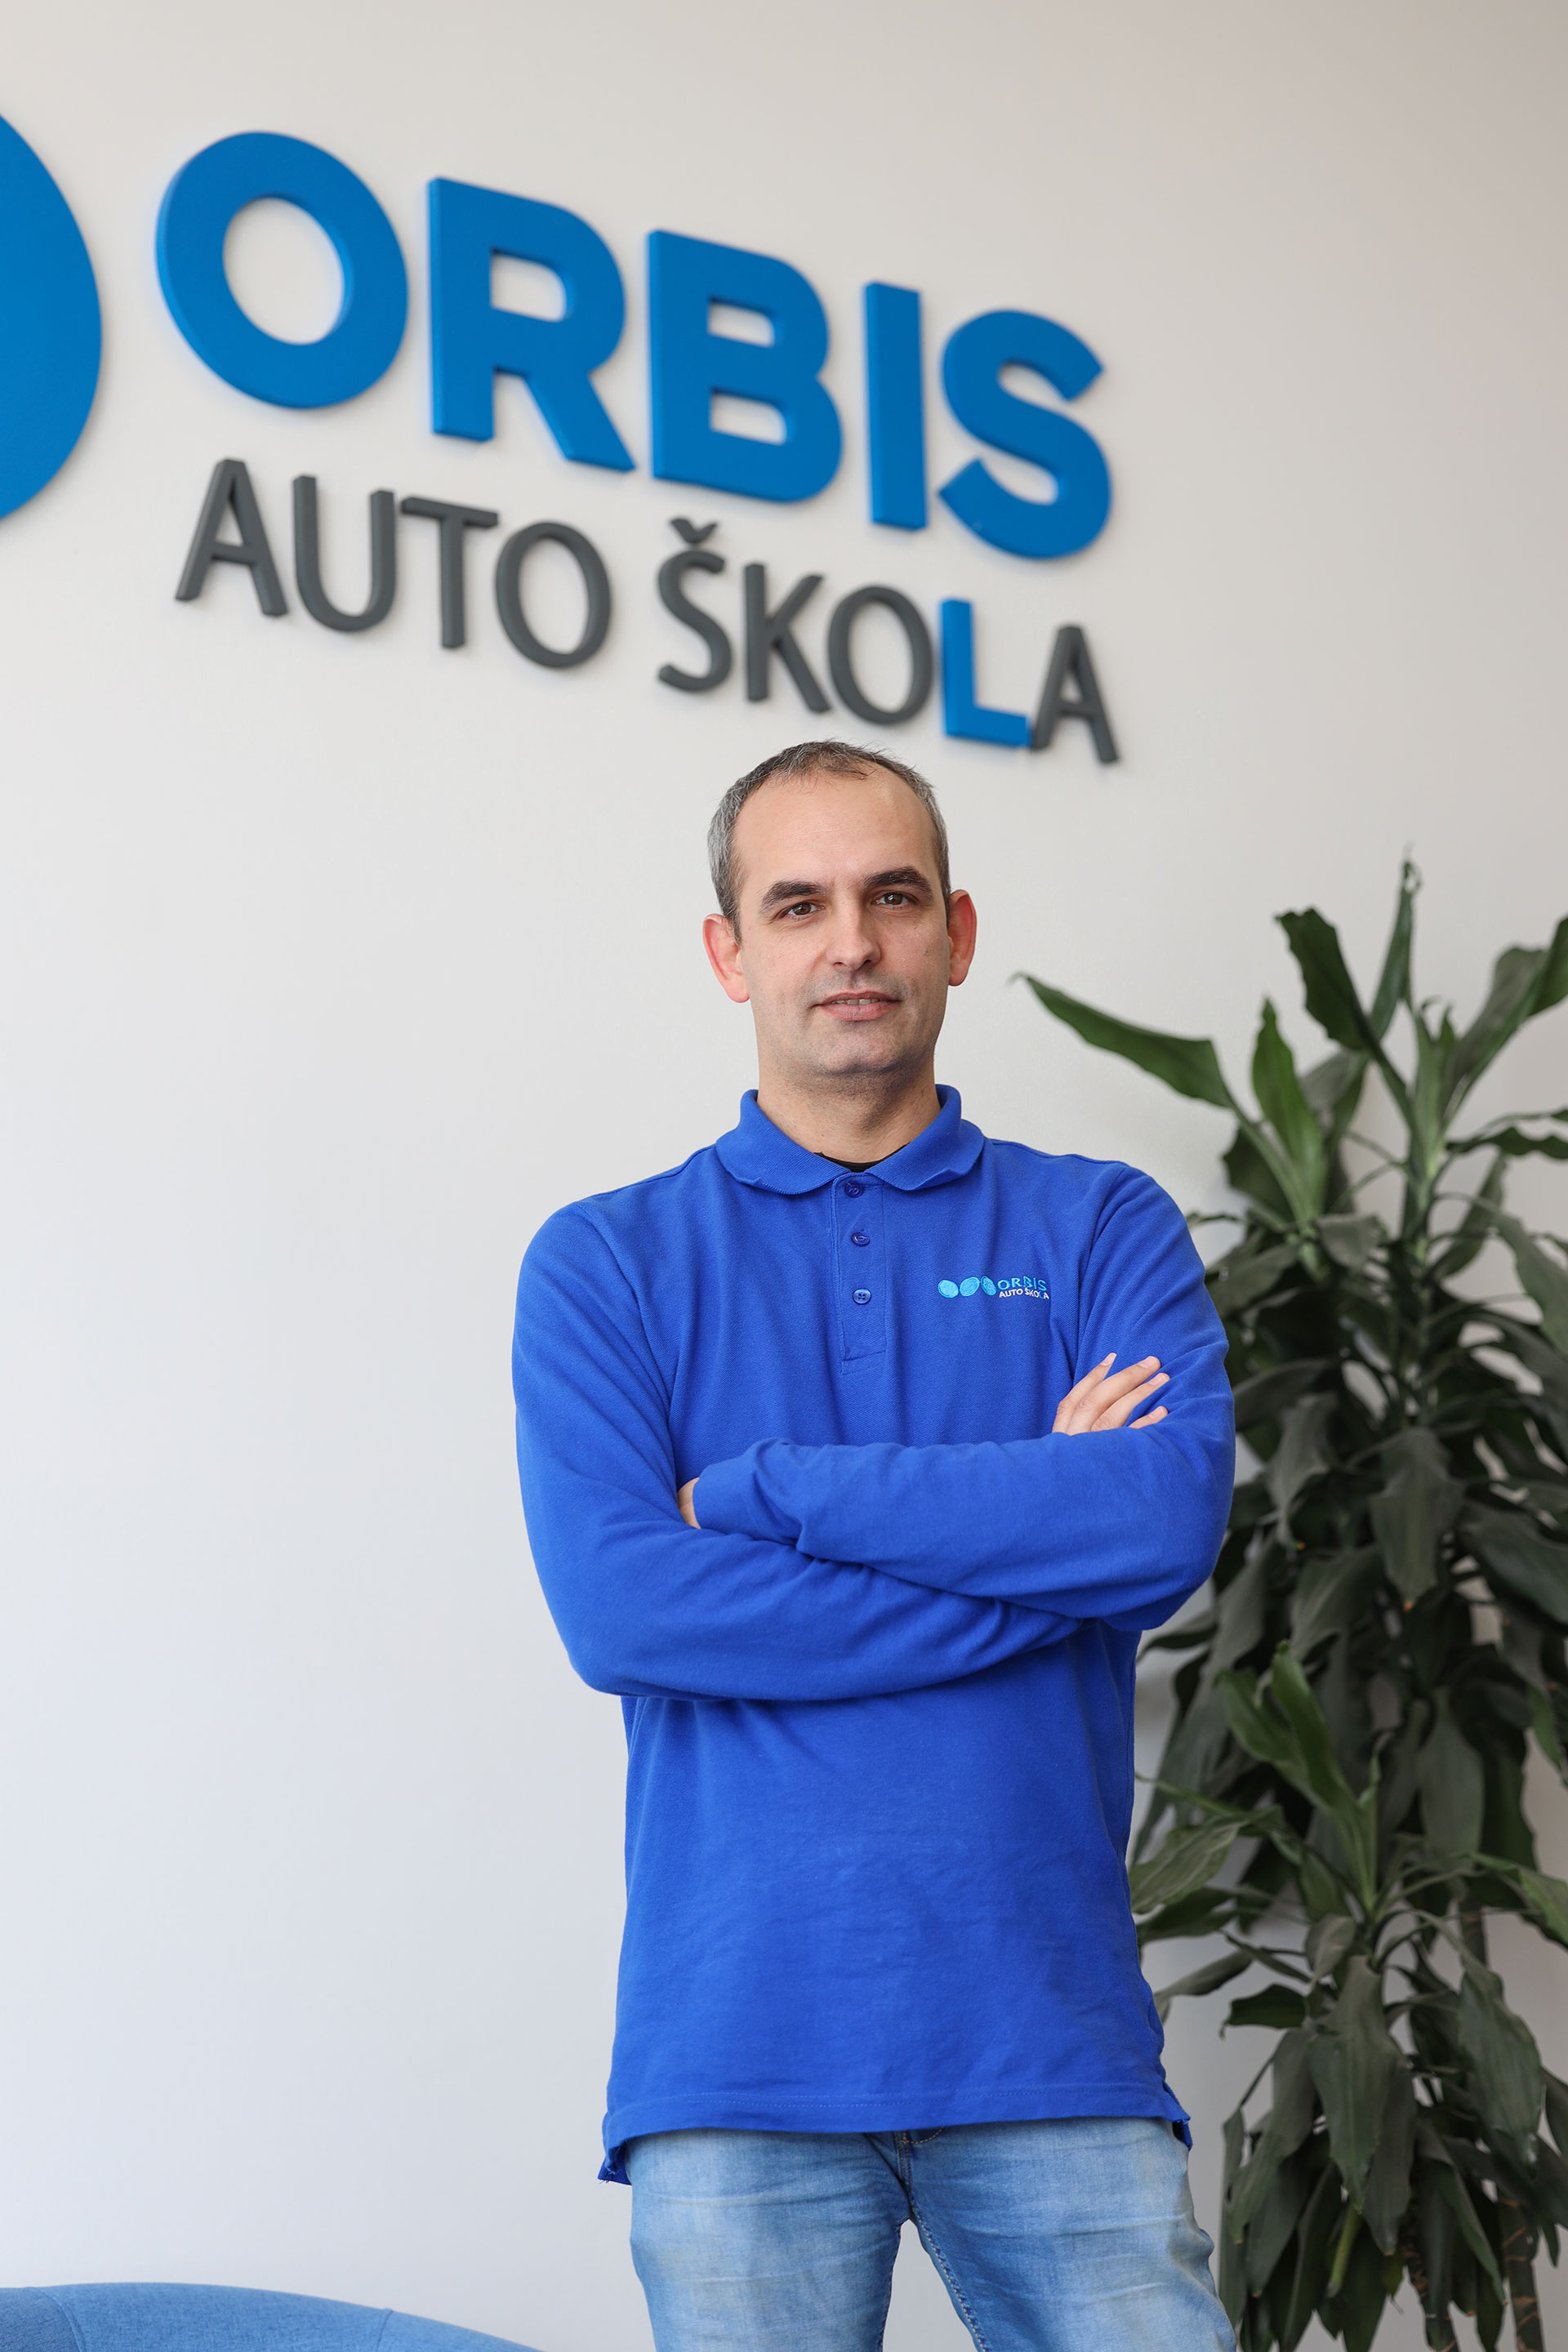 Auto skola Orbis instruktor voznje Dražen Lapadatović